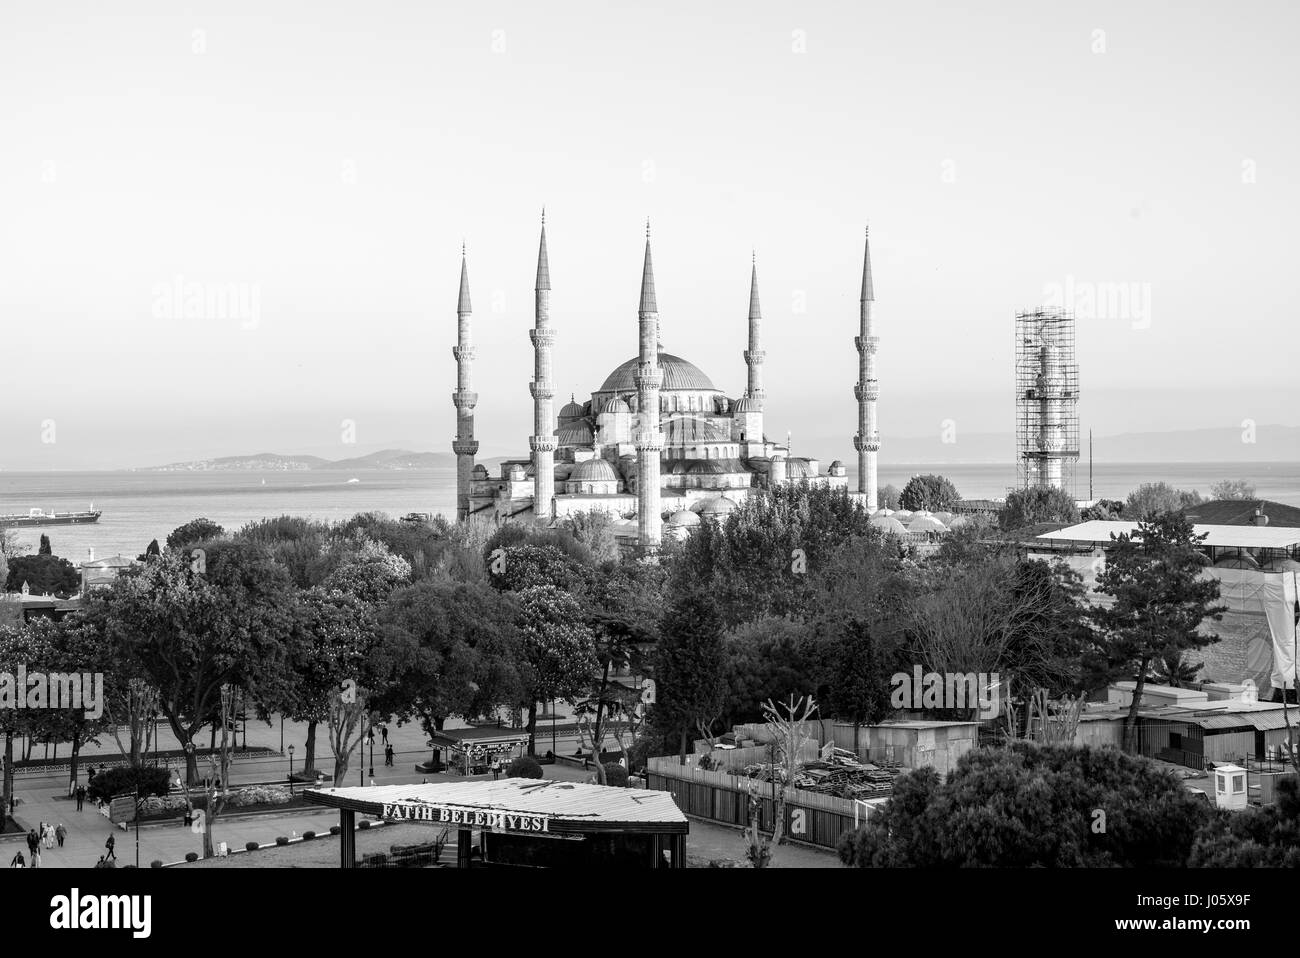 La Mosquée Sultan Ahmed ou Mosquée Sultan Ahmet est une mosquée historique situé à Istanbul, Turquie. Un site touristique populaire, la Mosquée Sultan Ahmed continue à fonctionner comme une mosquée aujourd'hui. La Mosquée Bleue, comme c'est généralement connu, a été construit entre 1609 et 1616 pendant le règne de Ahmed I. La nuit la mosquée est baigné de lumières bleu comme la mosquée du châssis principal de cinq dômes, six minarets et huit dômes secondaires. Banque D'Images